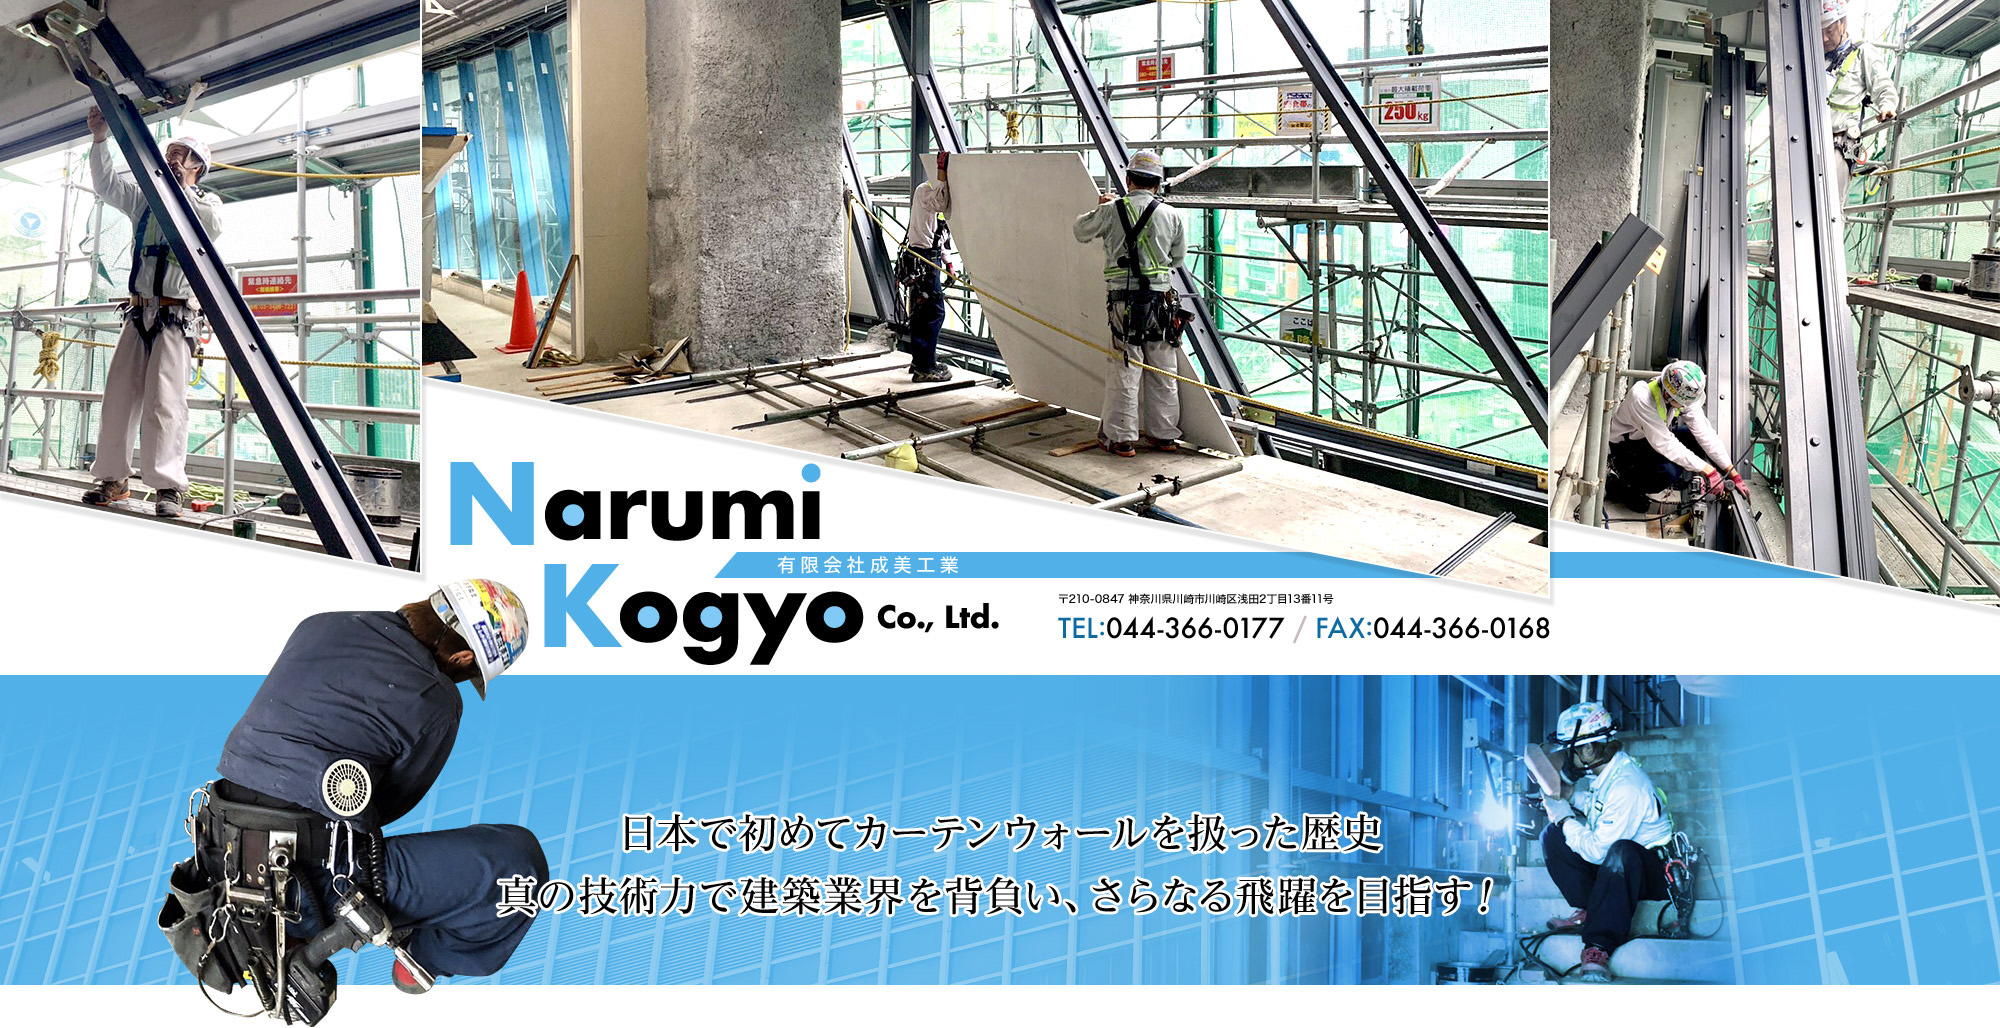 日本で初めてカーテンウォールを扱った歴史。真の技術力で建築業界を背負い、さらなる飛躍を目指す！